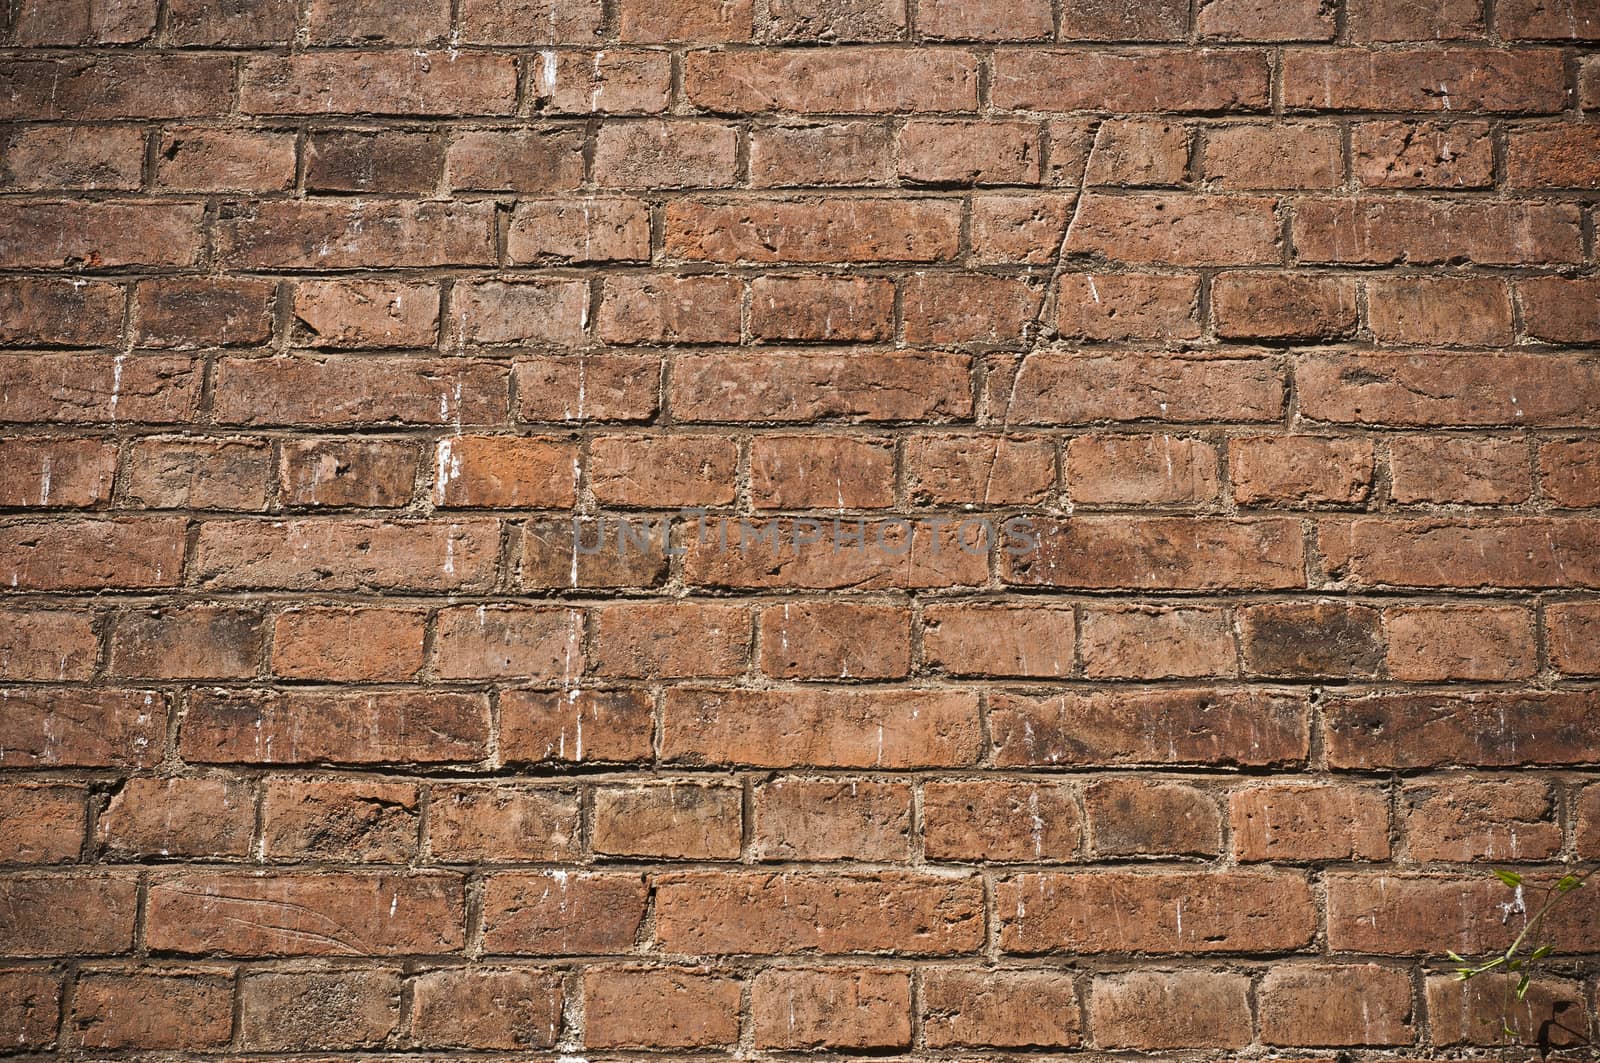 Brick background by NeydtStock